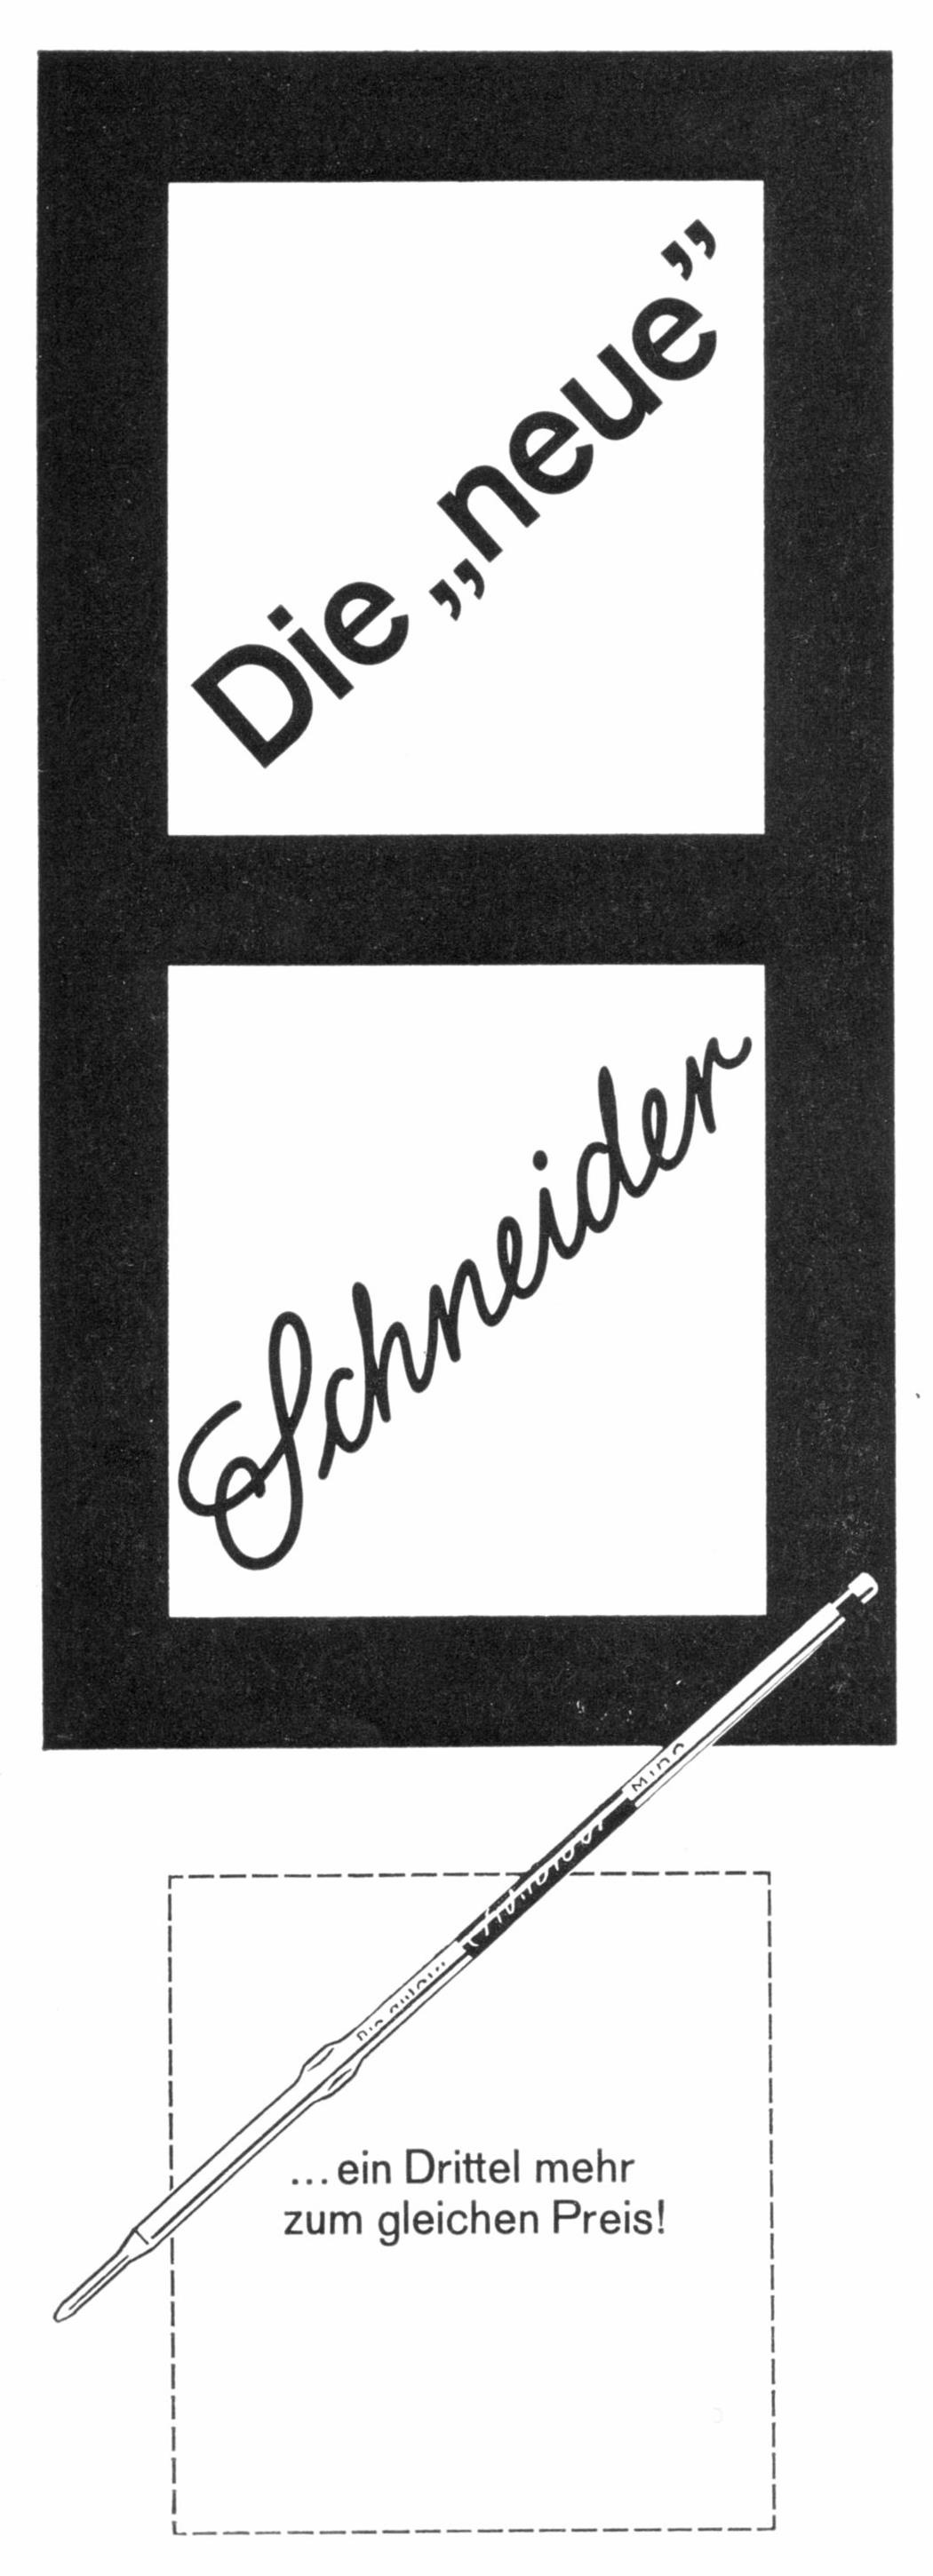 Schneider 1966.jpg